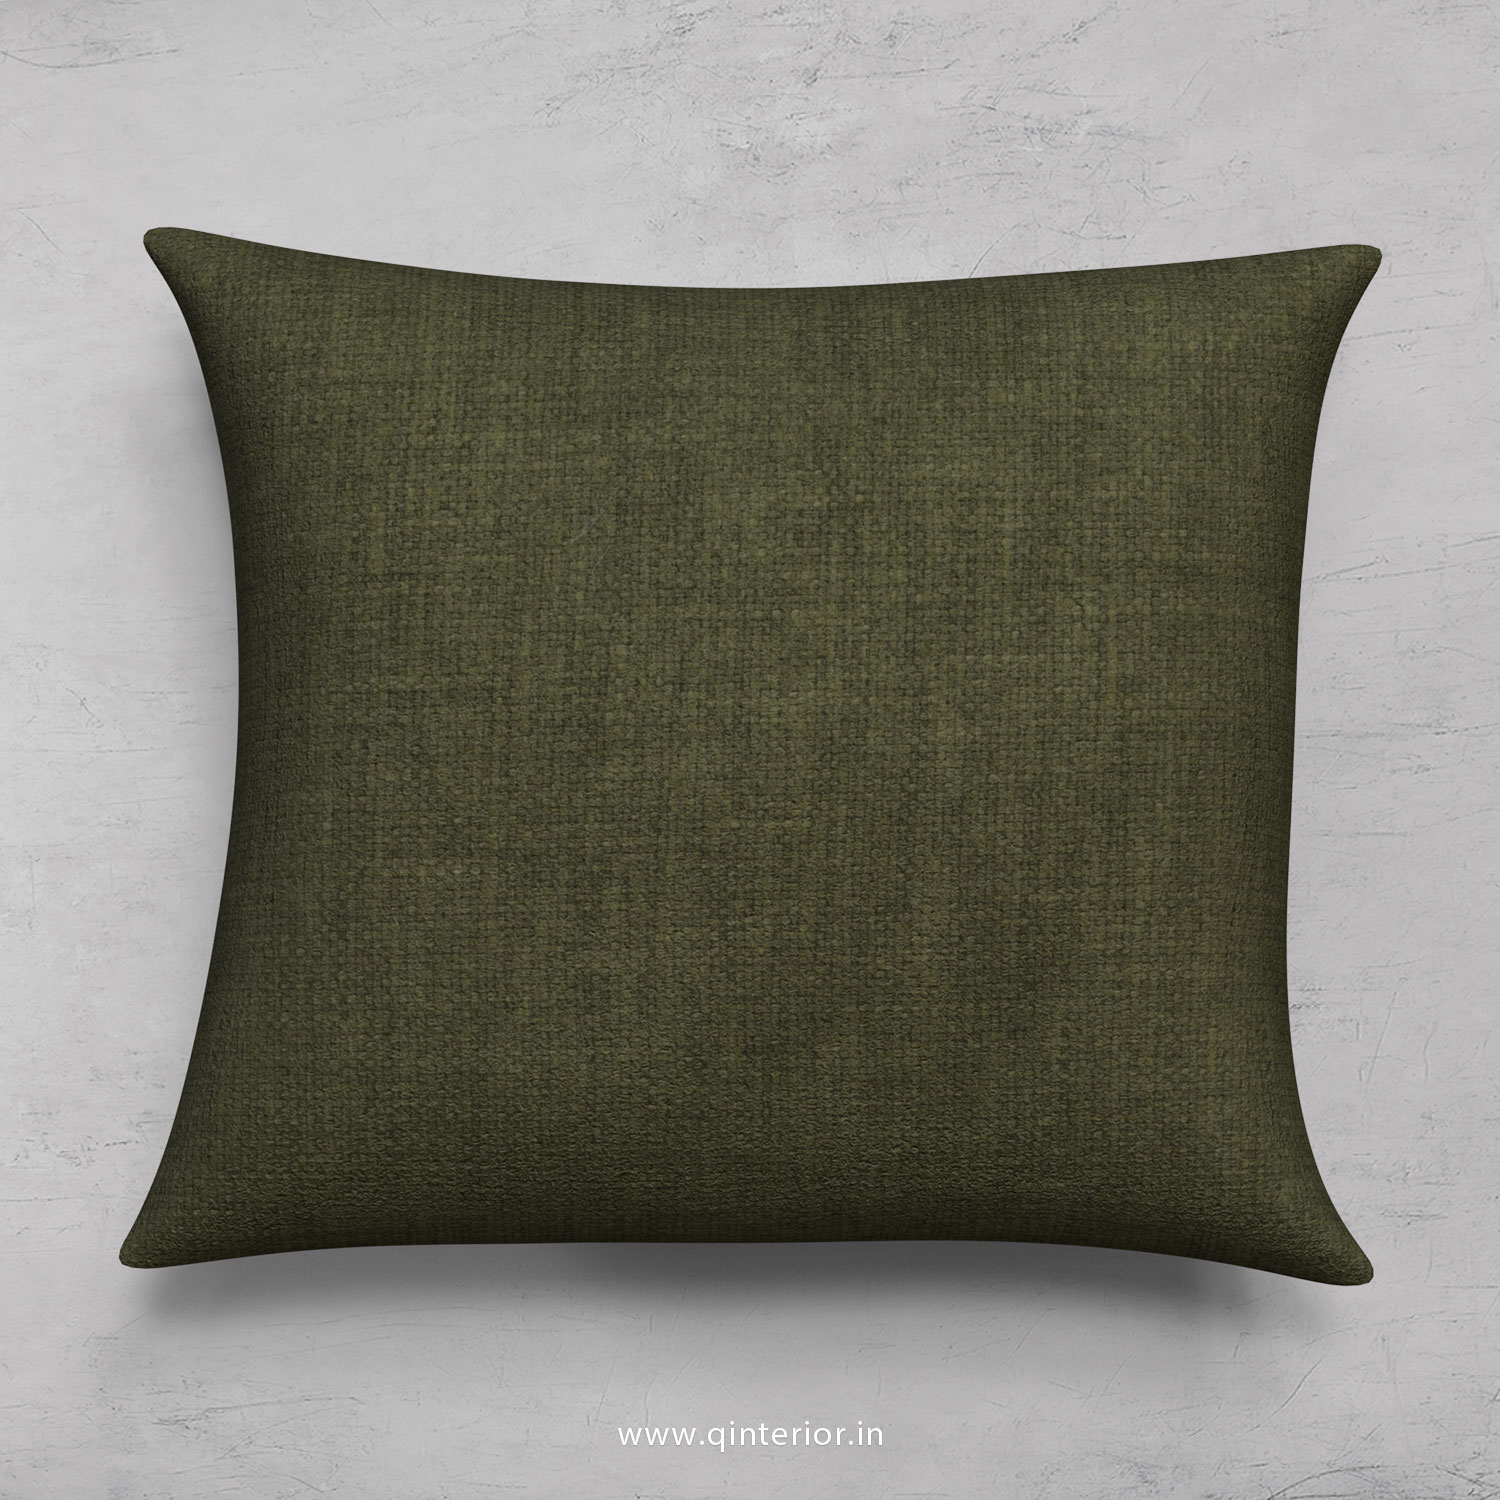 Cushion With Cushion Cover in Cotton Plain - CUS001 CP20